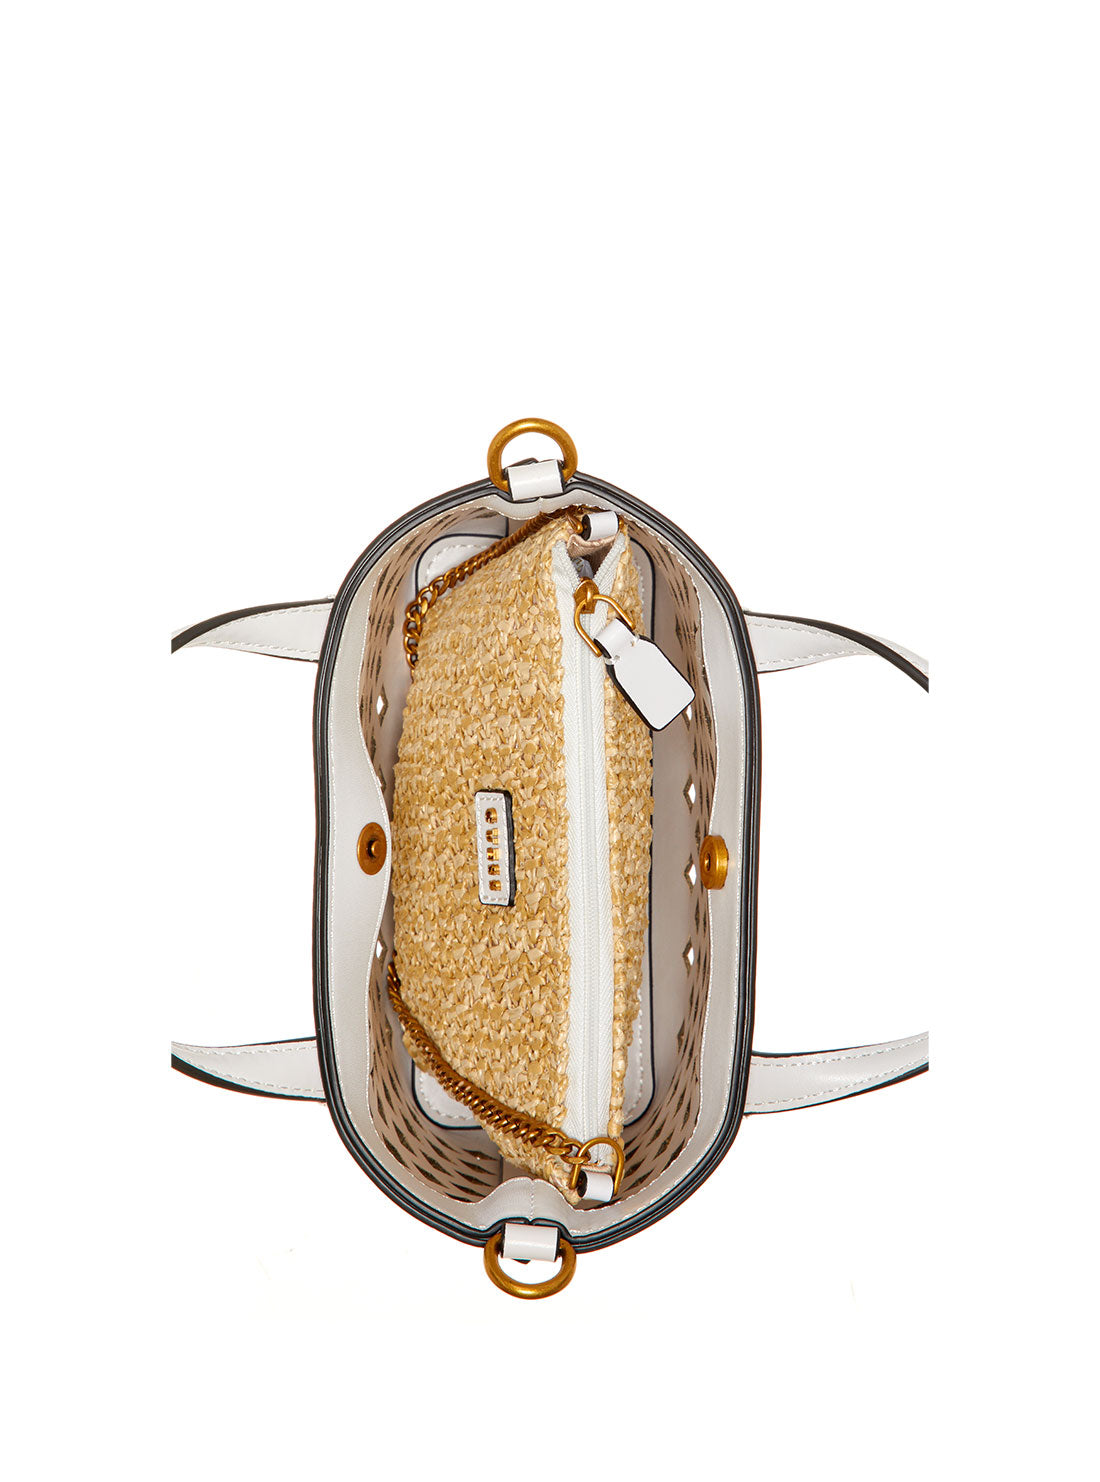 Guess Picnic Mini Tote Bag For Women, Pale Aqua: Buy Online at